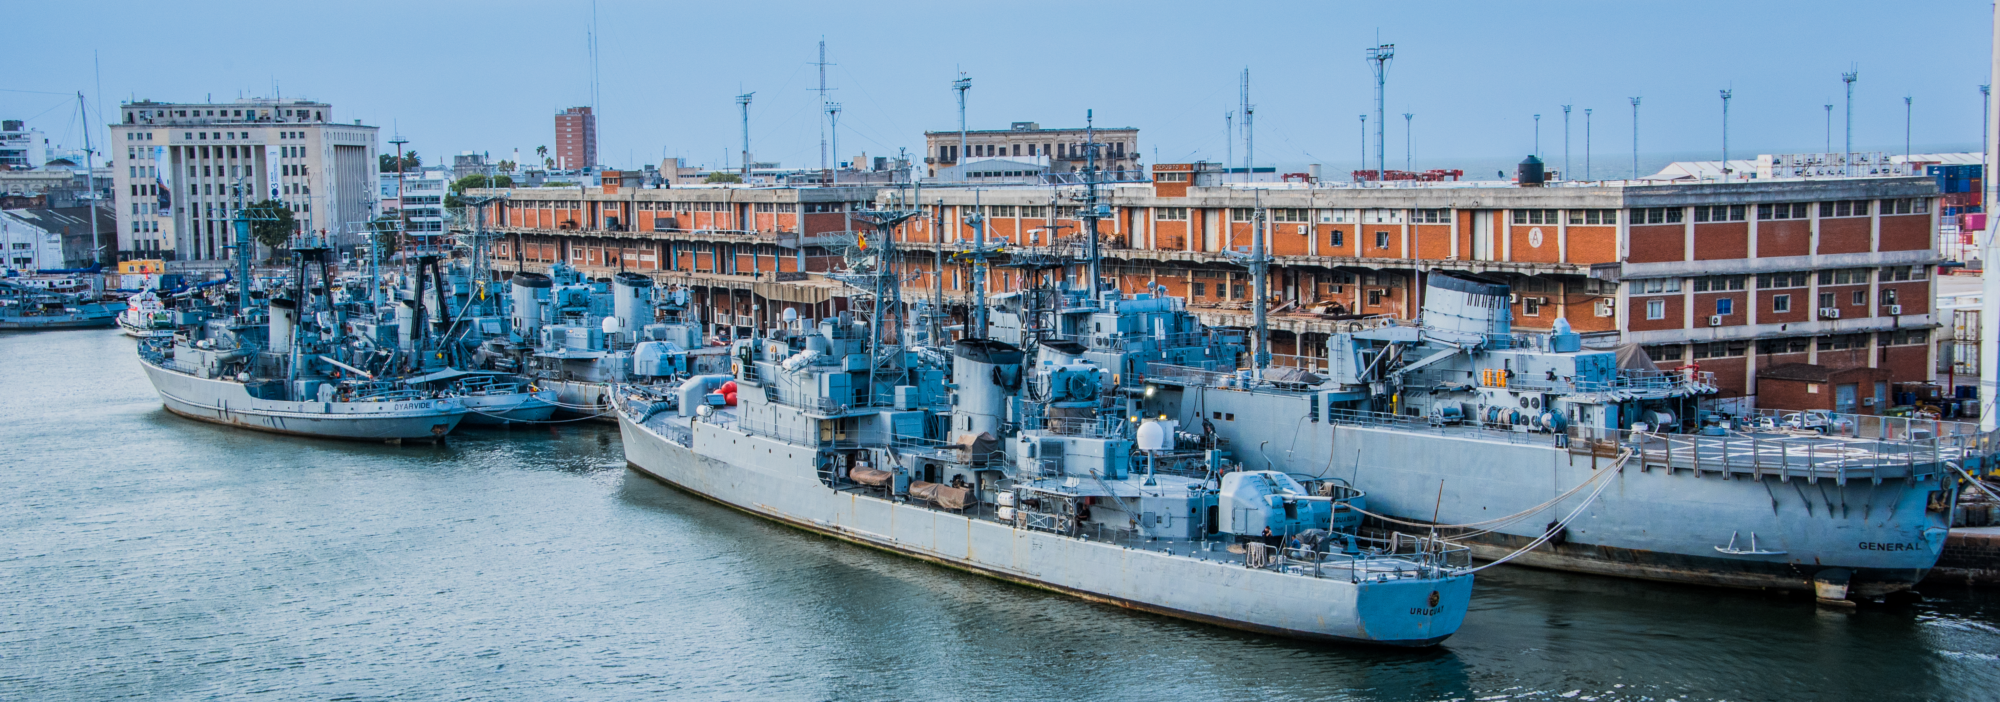 Barcos de la armada uruguaya en el puerto de Montevideo